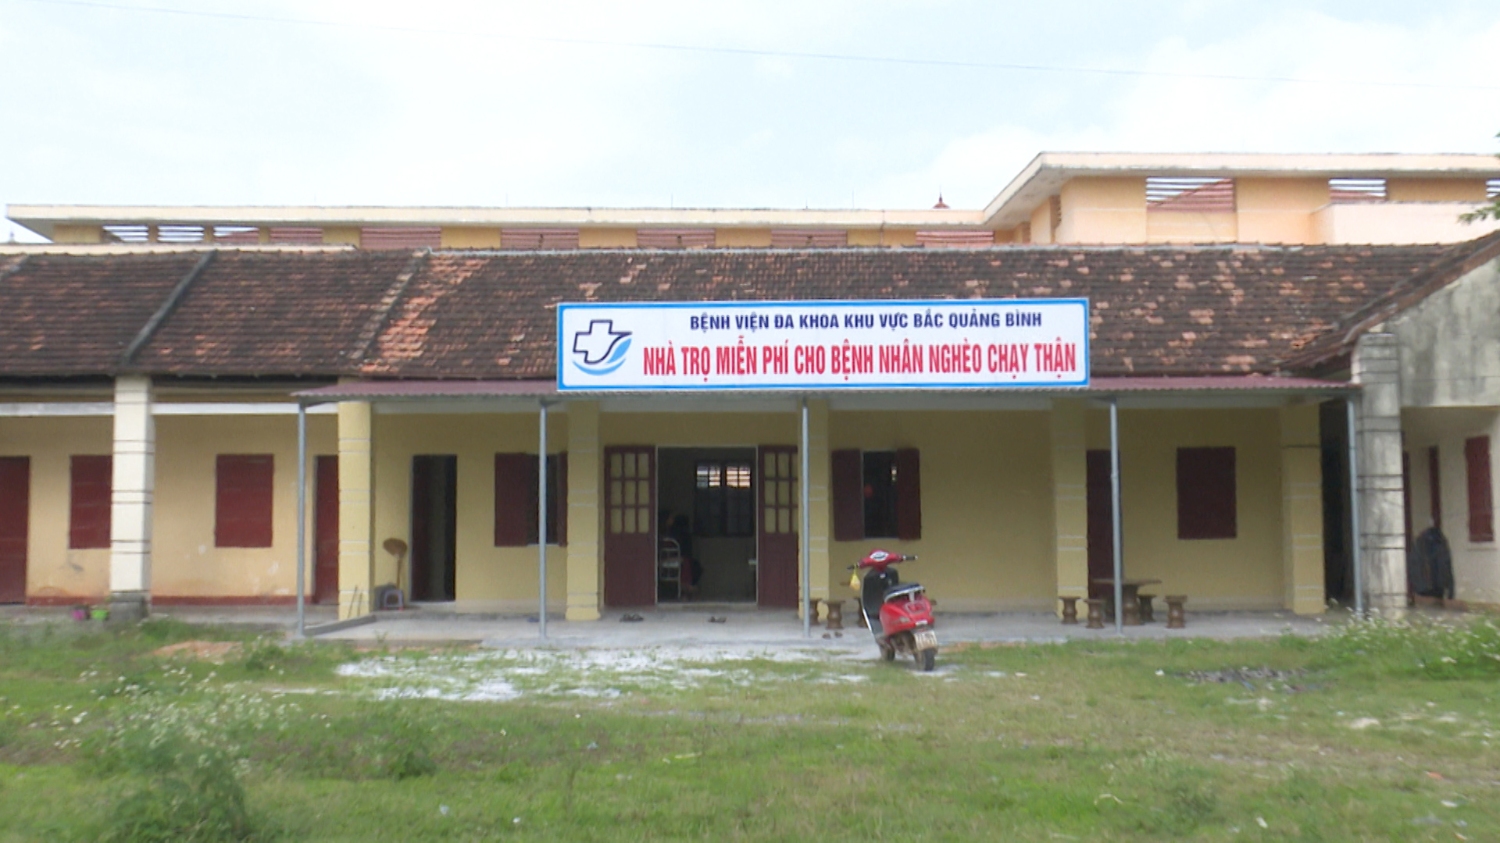 Ấm lòng mái nhà cho bệnh nhân chạy thận tại Bệnh viện Đa khoa khu vực Bắc Quảng Bình